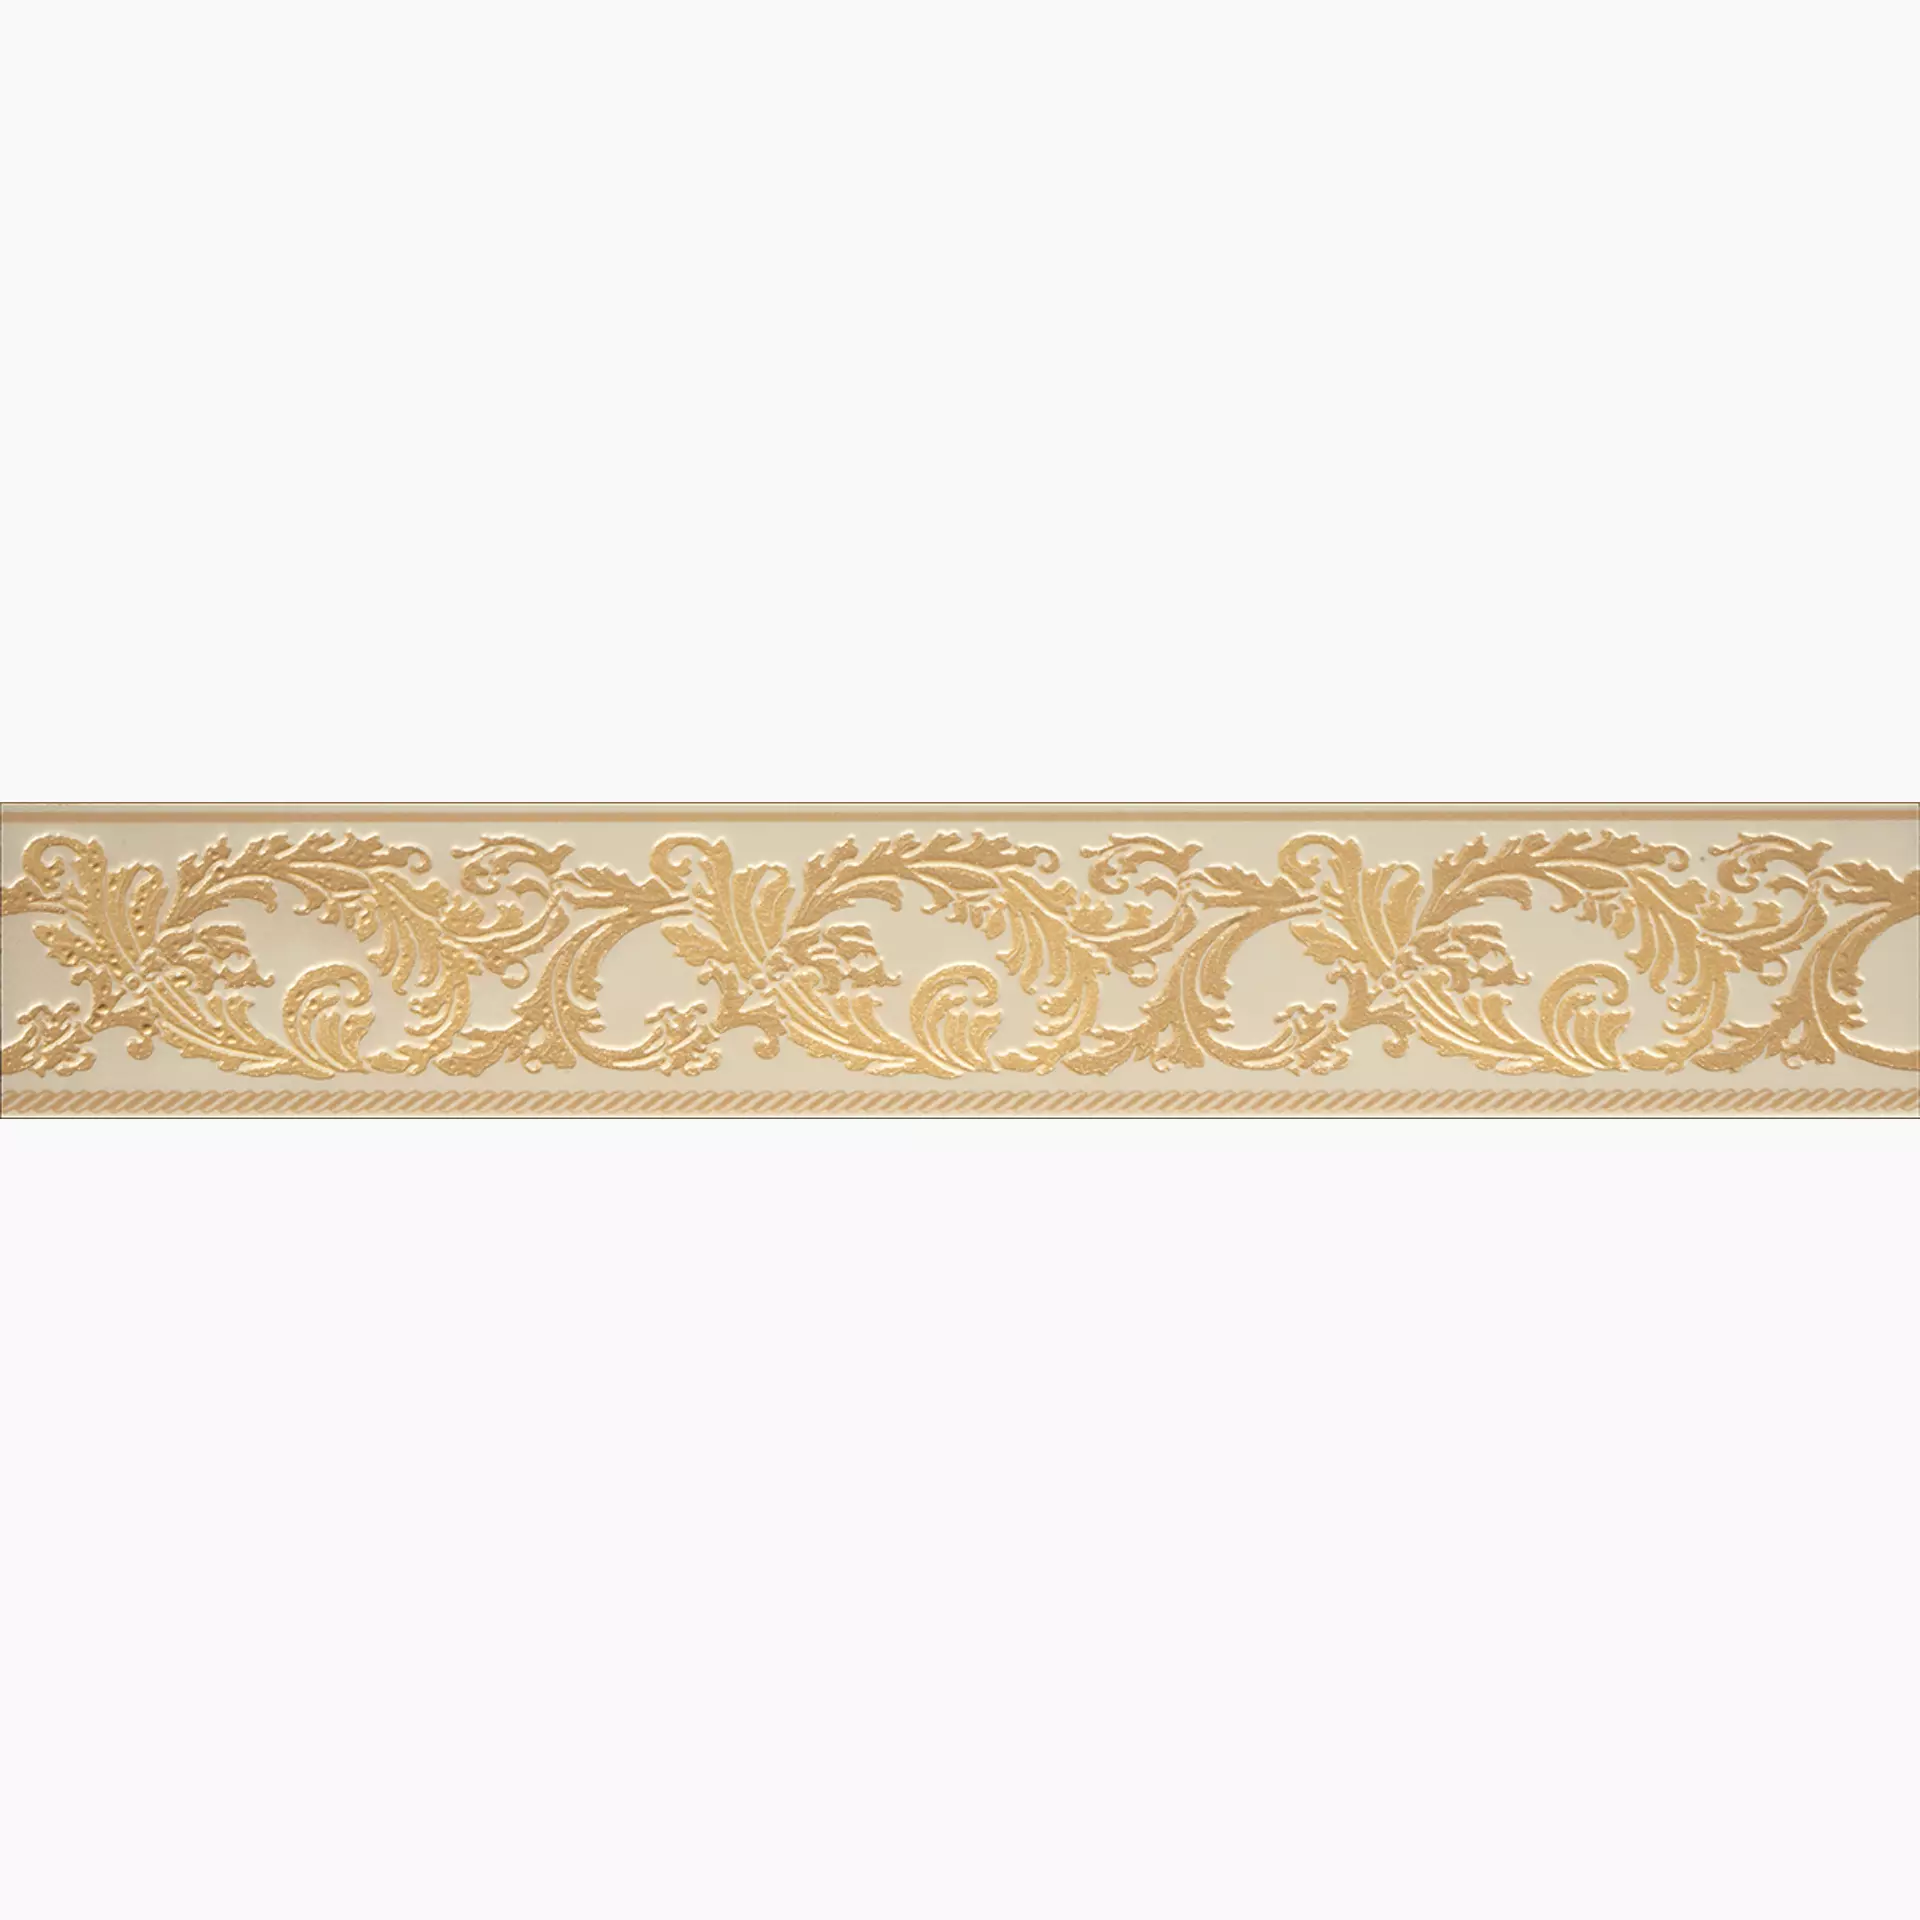 Versace Marble (Gar) Beige Lux Beige G0240884 9,6x58,5cm Band Barocca rektifiziert 9,5mm